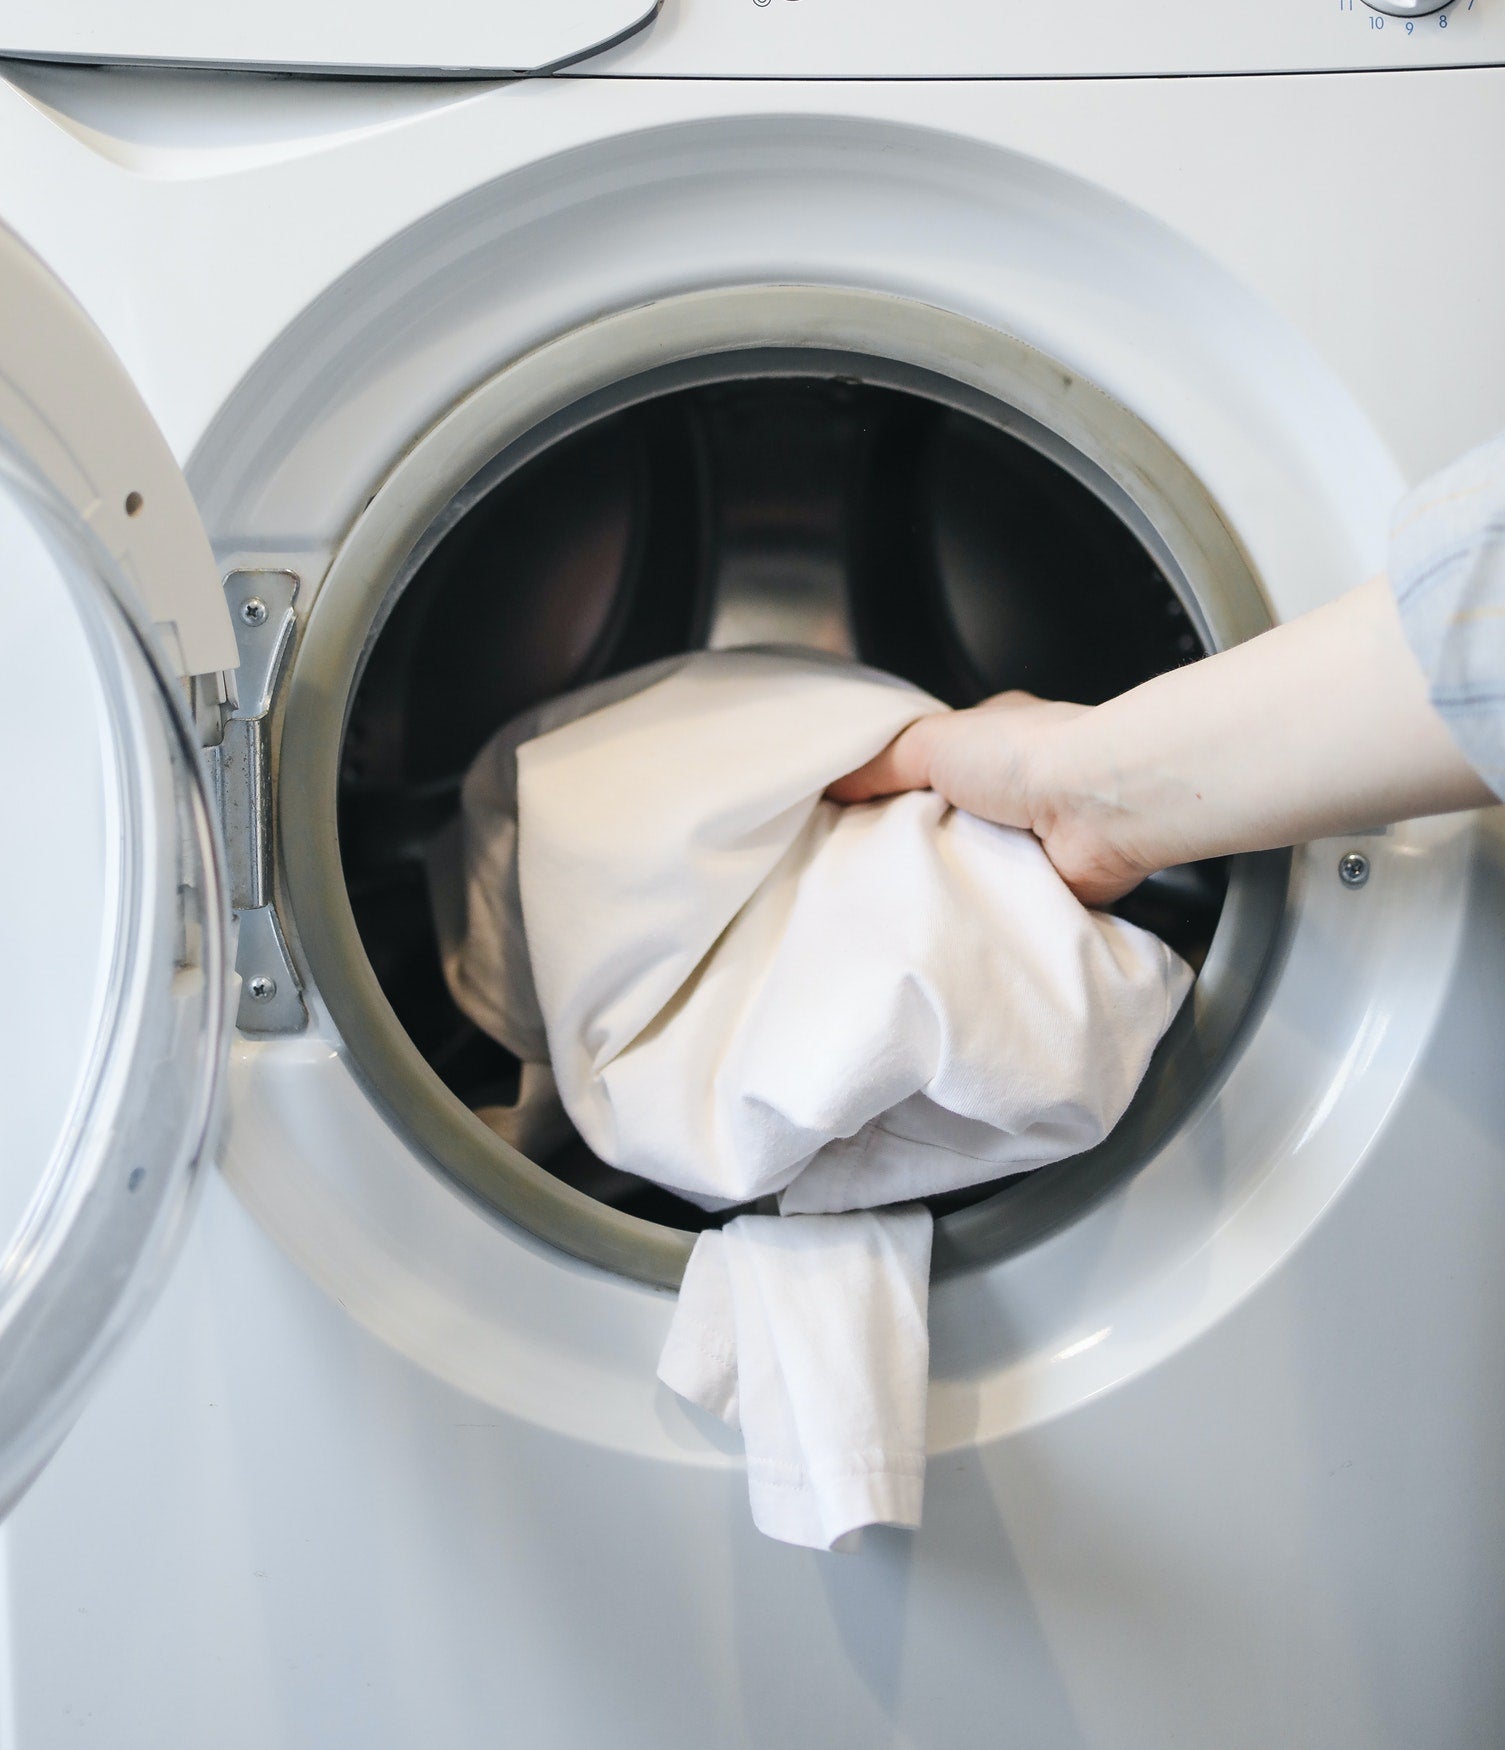 Descubre limpiar el sarro de tu lavadora – Vigahome